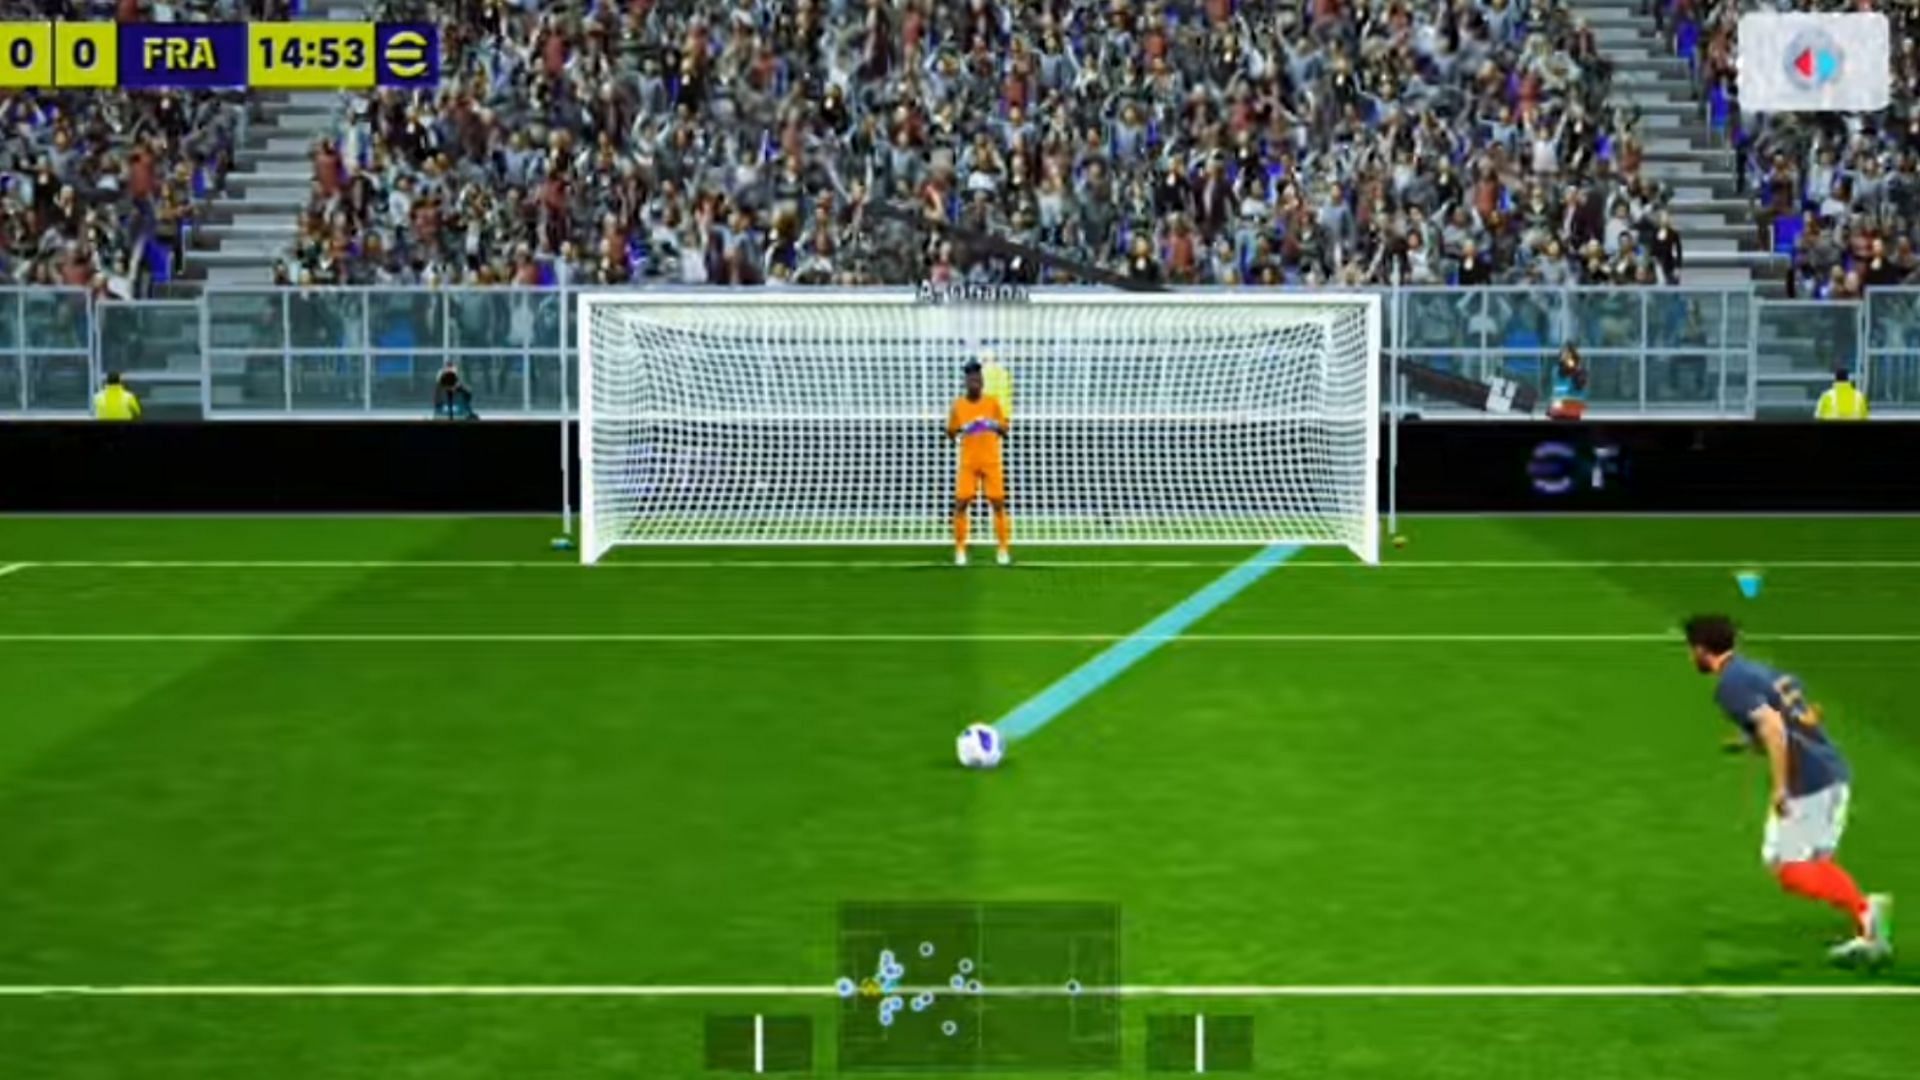 Mohamed Salah taking penalty (Image via Konami)